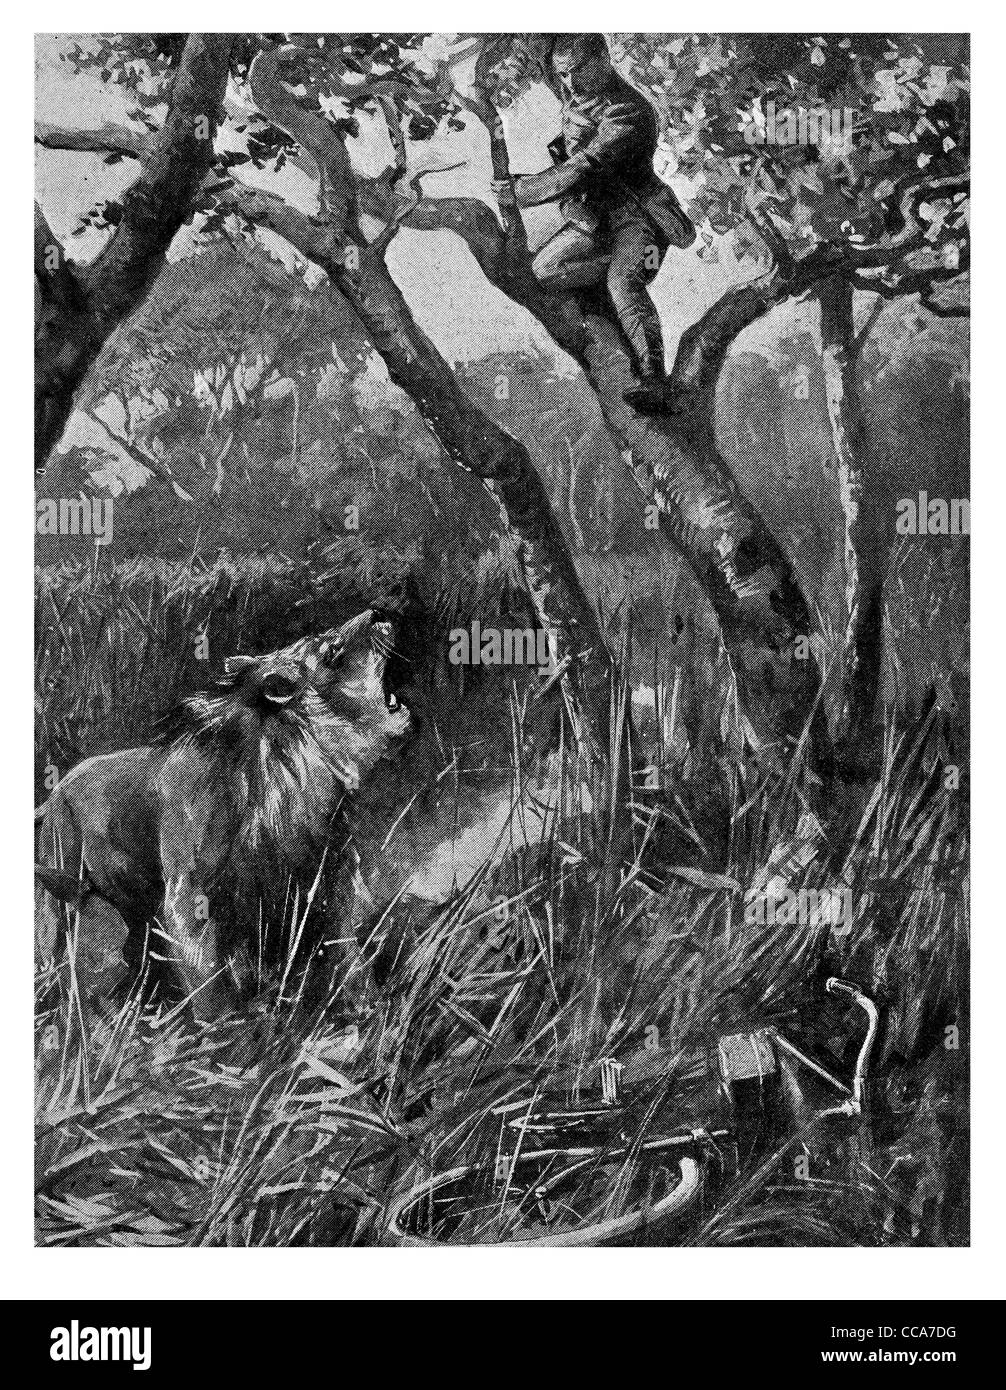 1916 East Africa Lion attaquant l'estafette motor bike messenger relation prédateur-proie bête sauvage safari Jungle king arbre cachant bush Banque D'Images